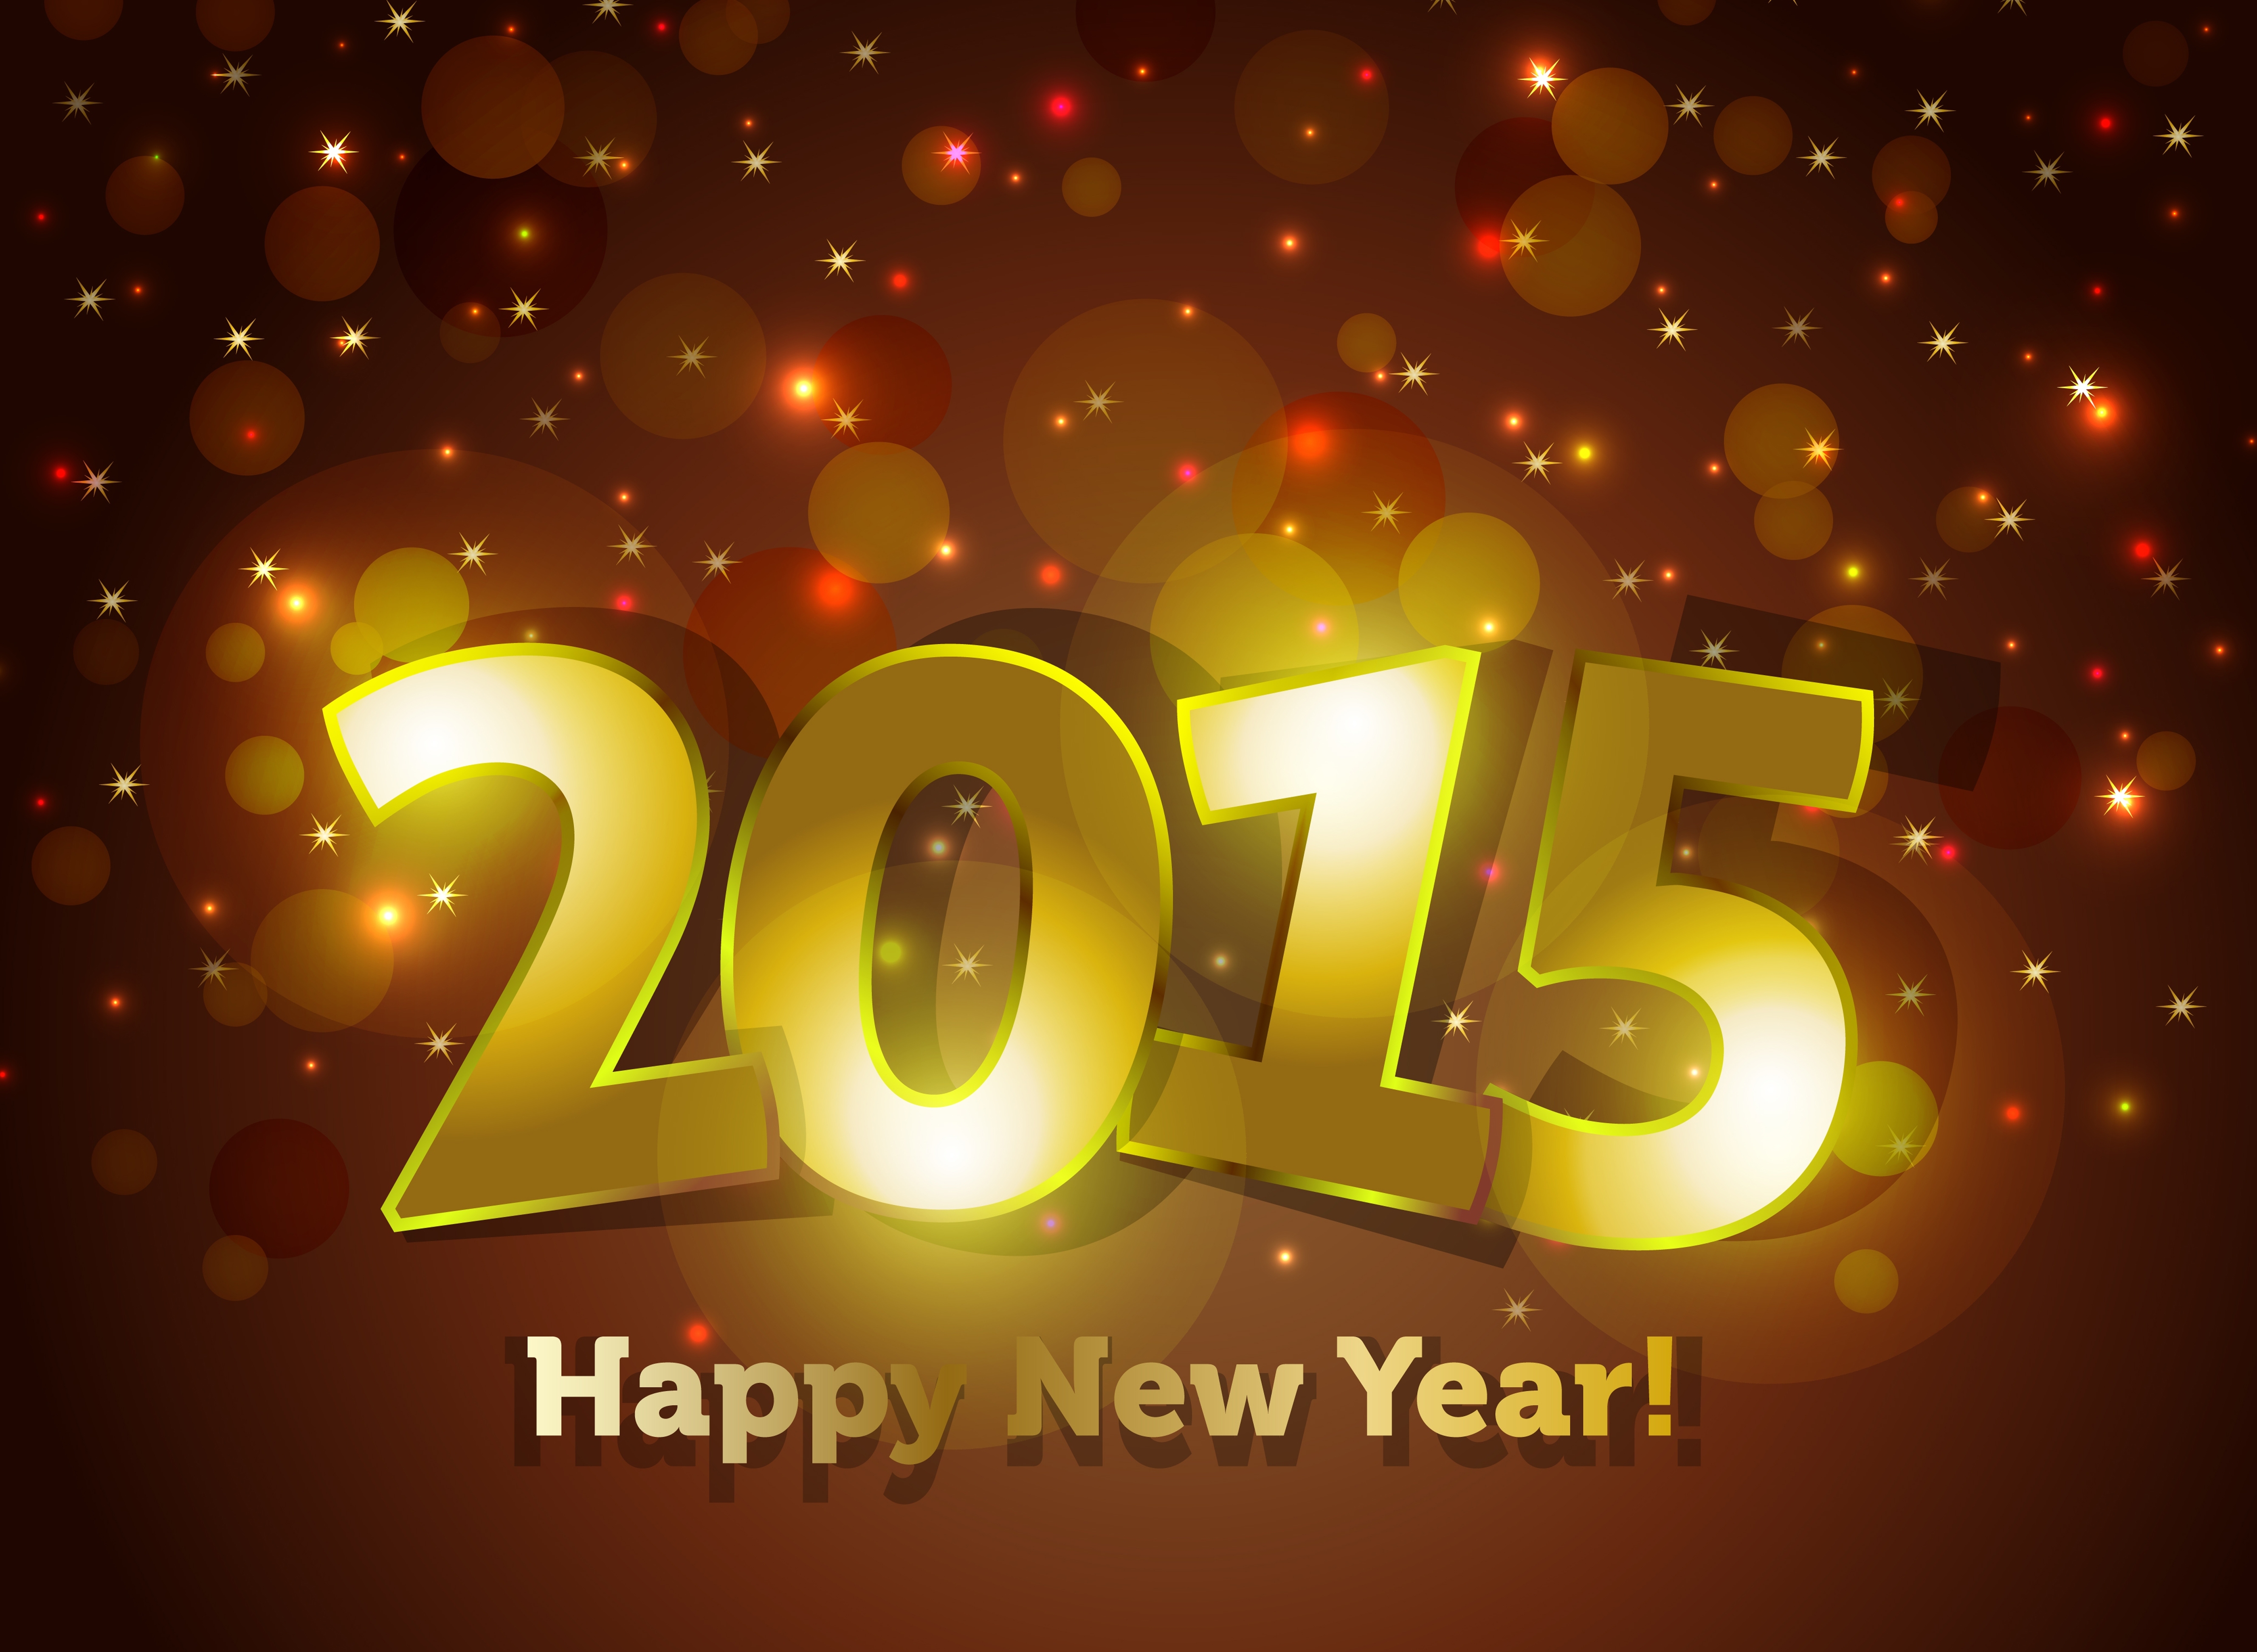 2015. 2015 Год. Картинки 2015 года. Новый год 2015 год. С новым годом 2015 картинки.